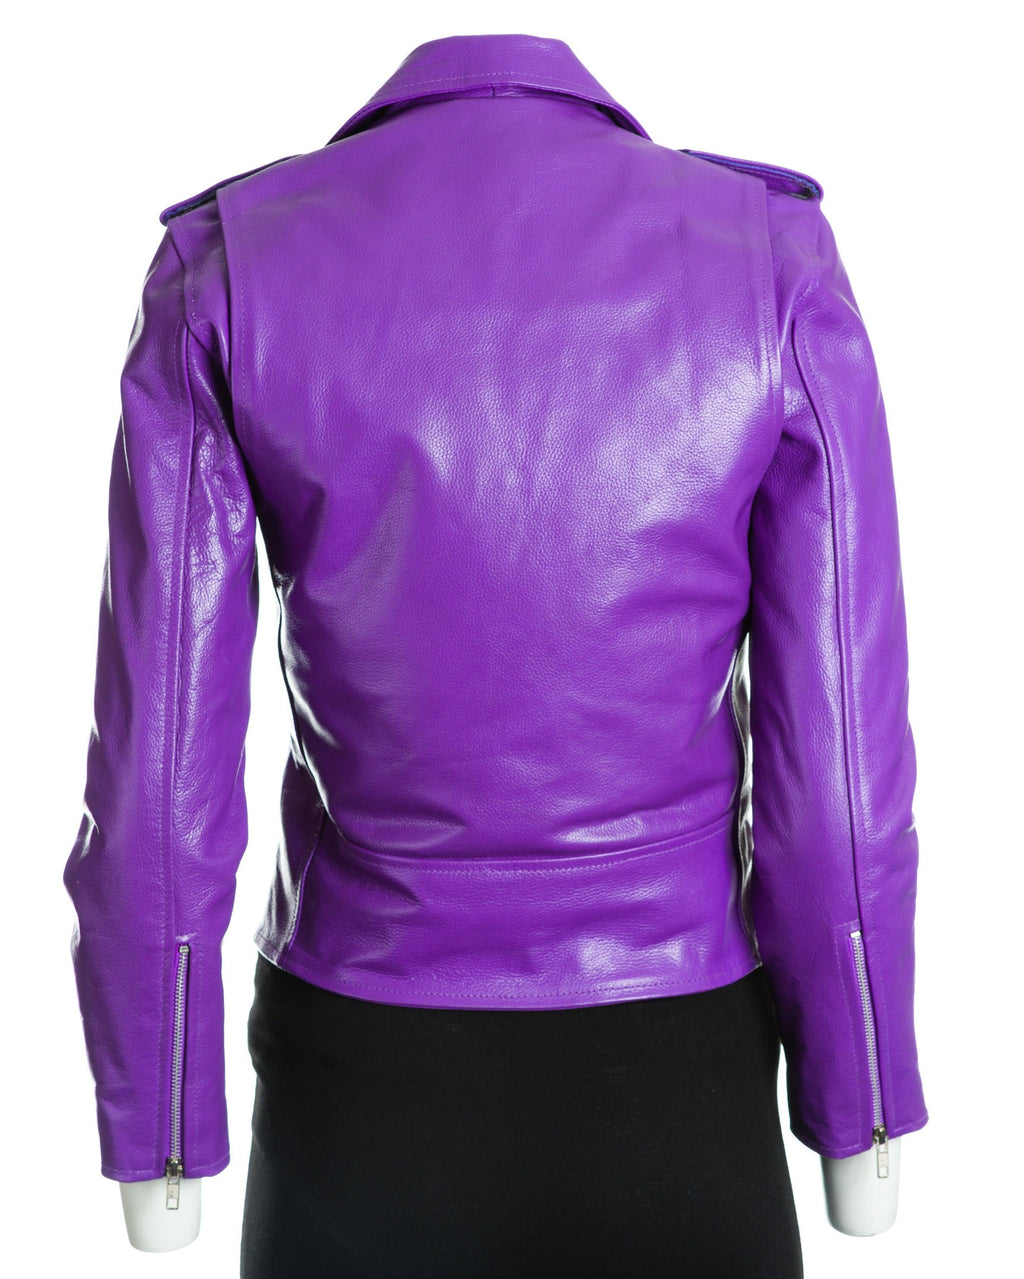 Women's Purple Classic Brando Biker Style Cow Hide Leather Jacket: Gemma